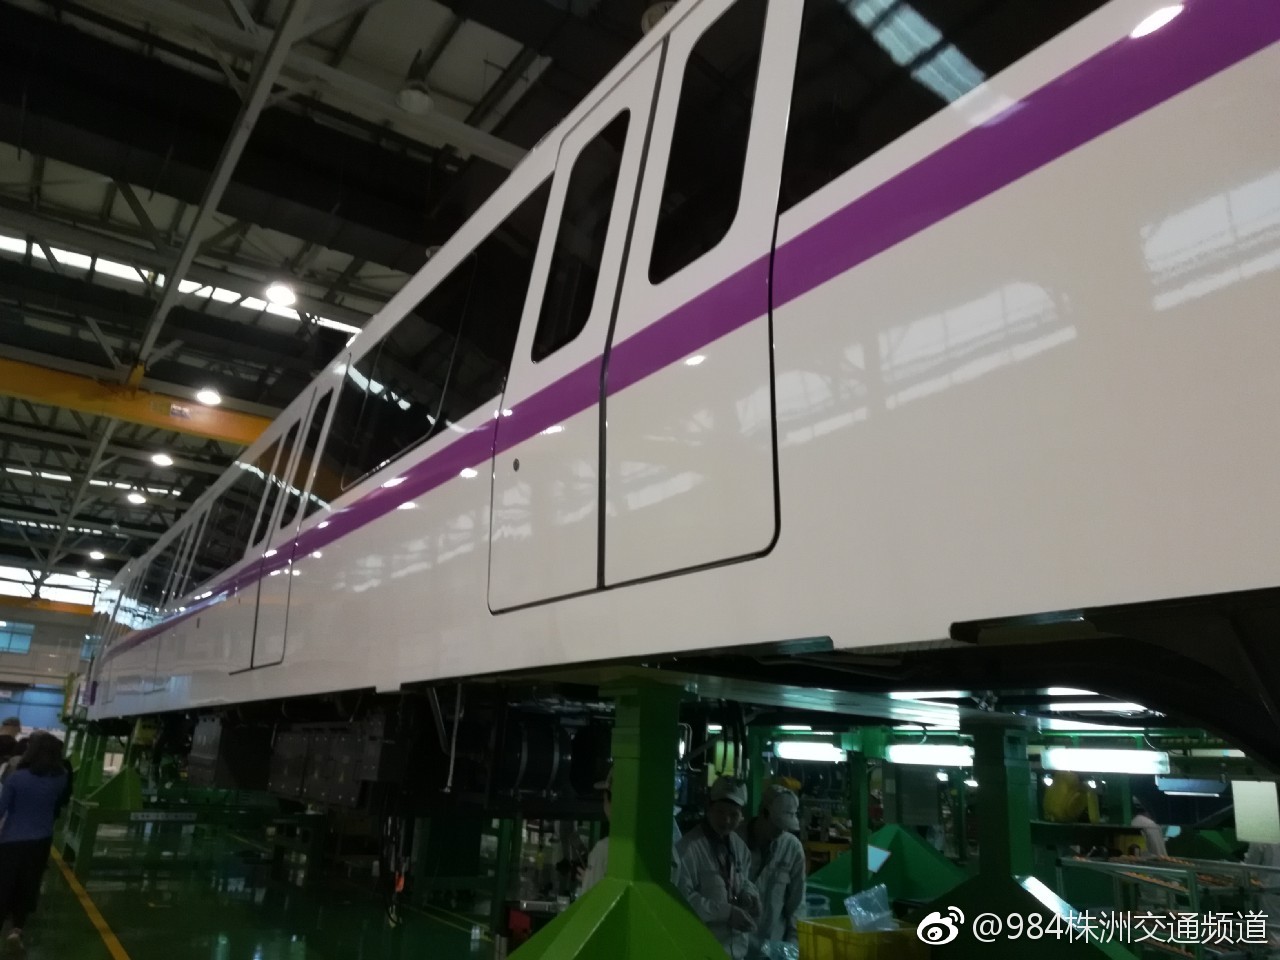 中车株机磁浮2.0将进入时速200公里时代 3.0预计明年下线